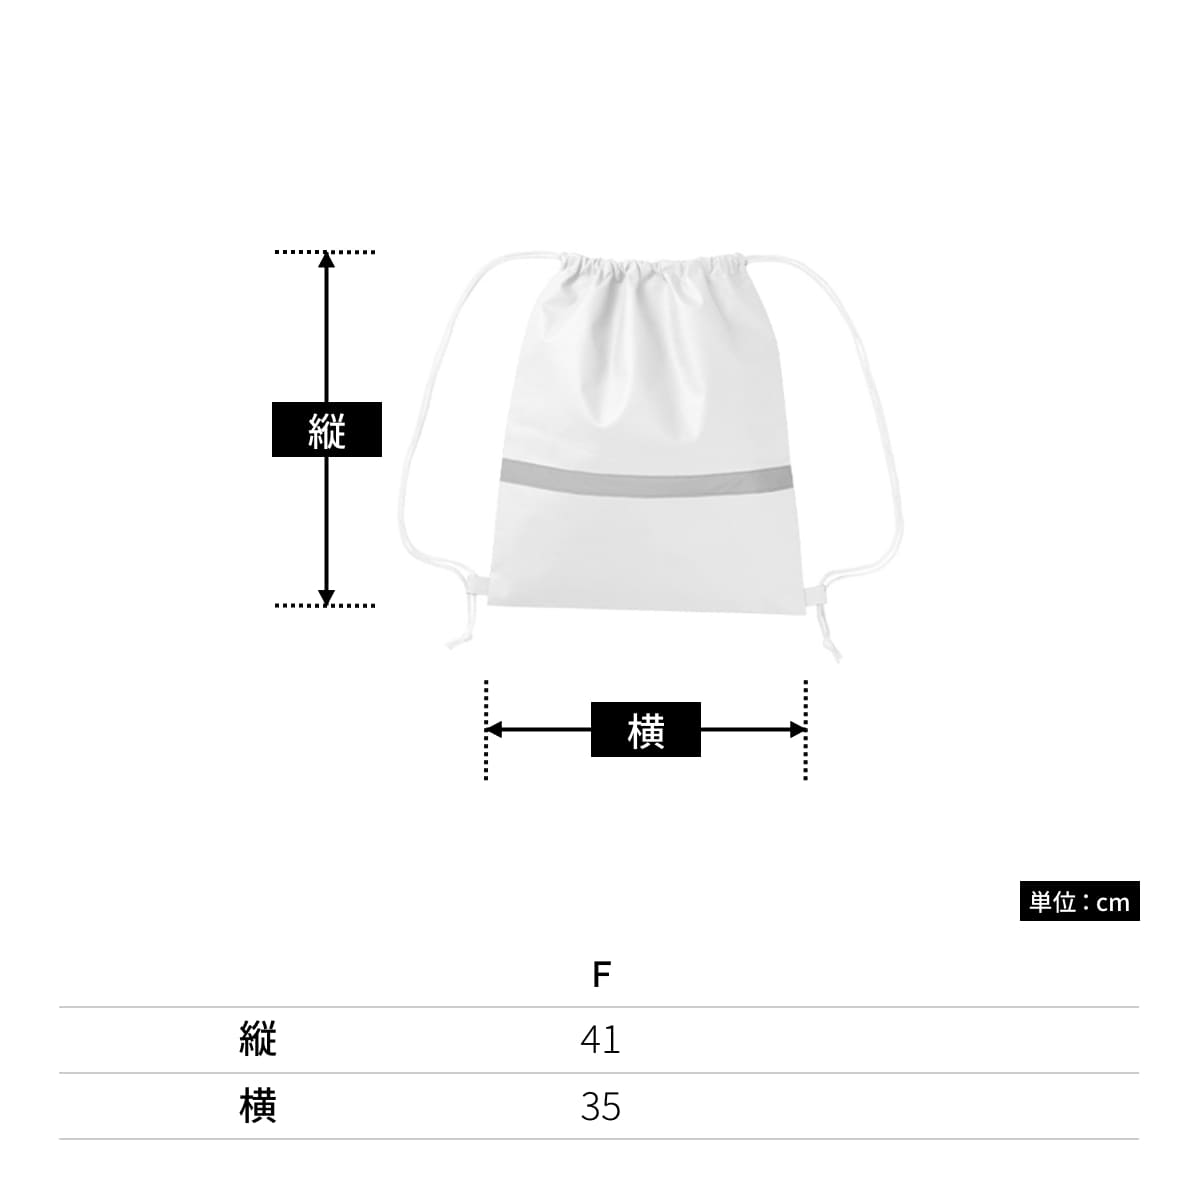 不織布 リフレクター付巾着リュック | ノベルティ(小物) | 1枚 | TR-1093 | ナチュラルホワイト